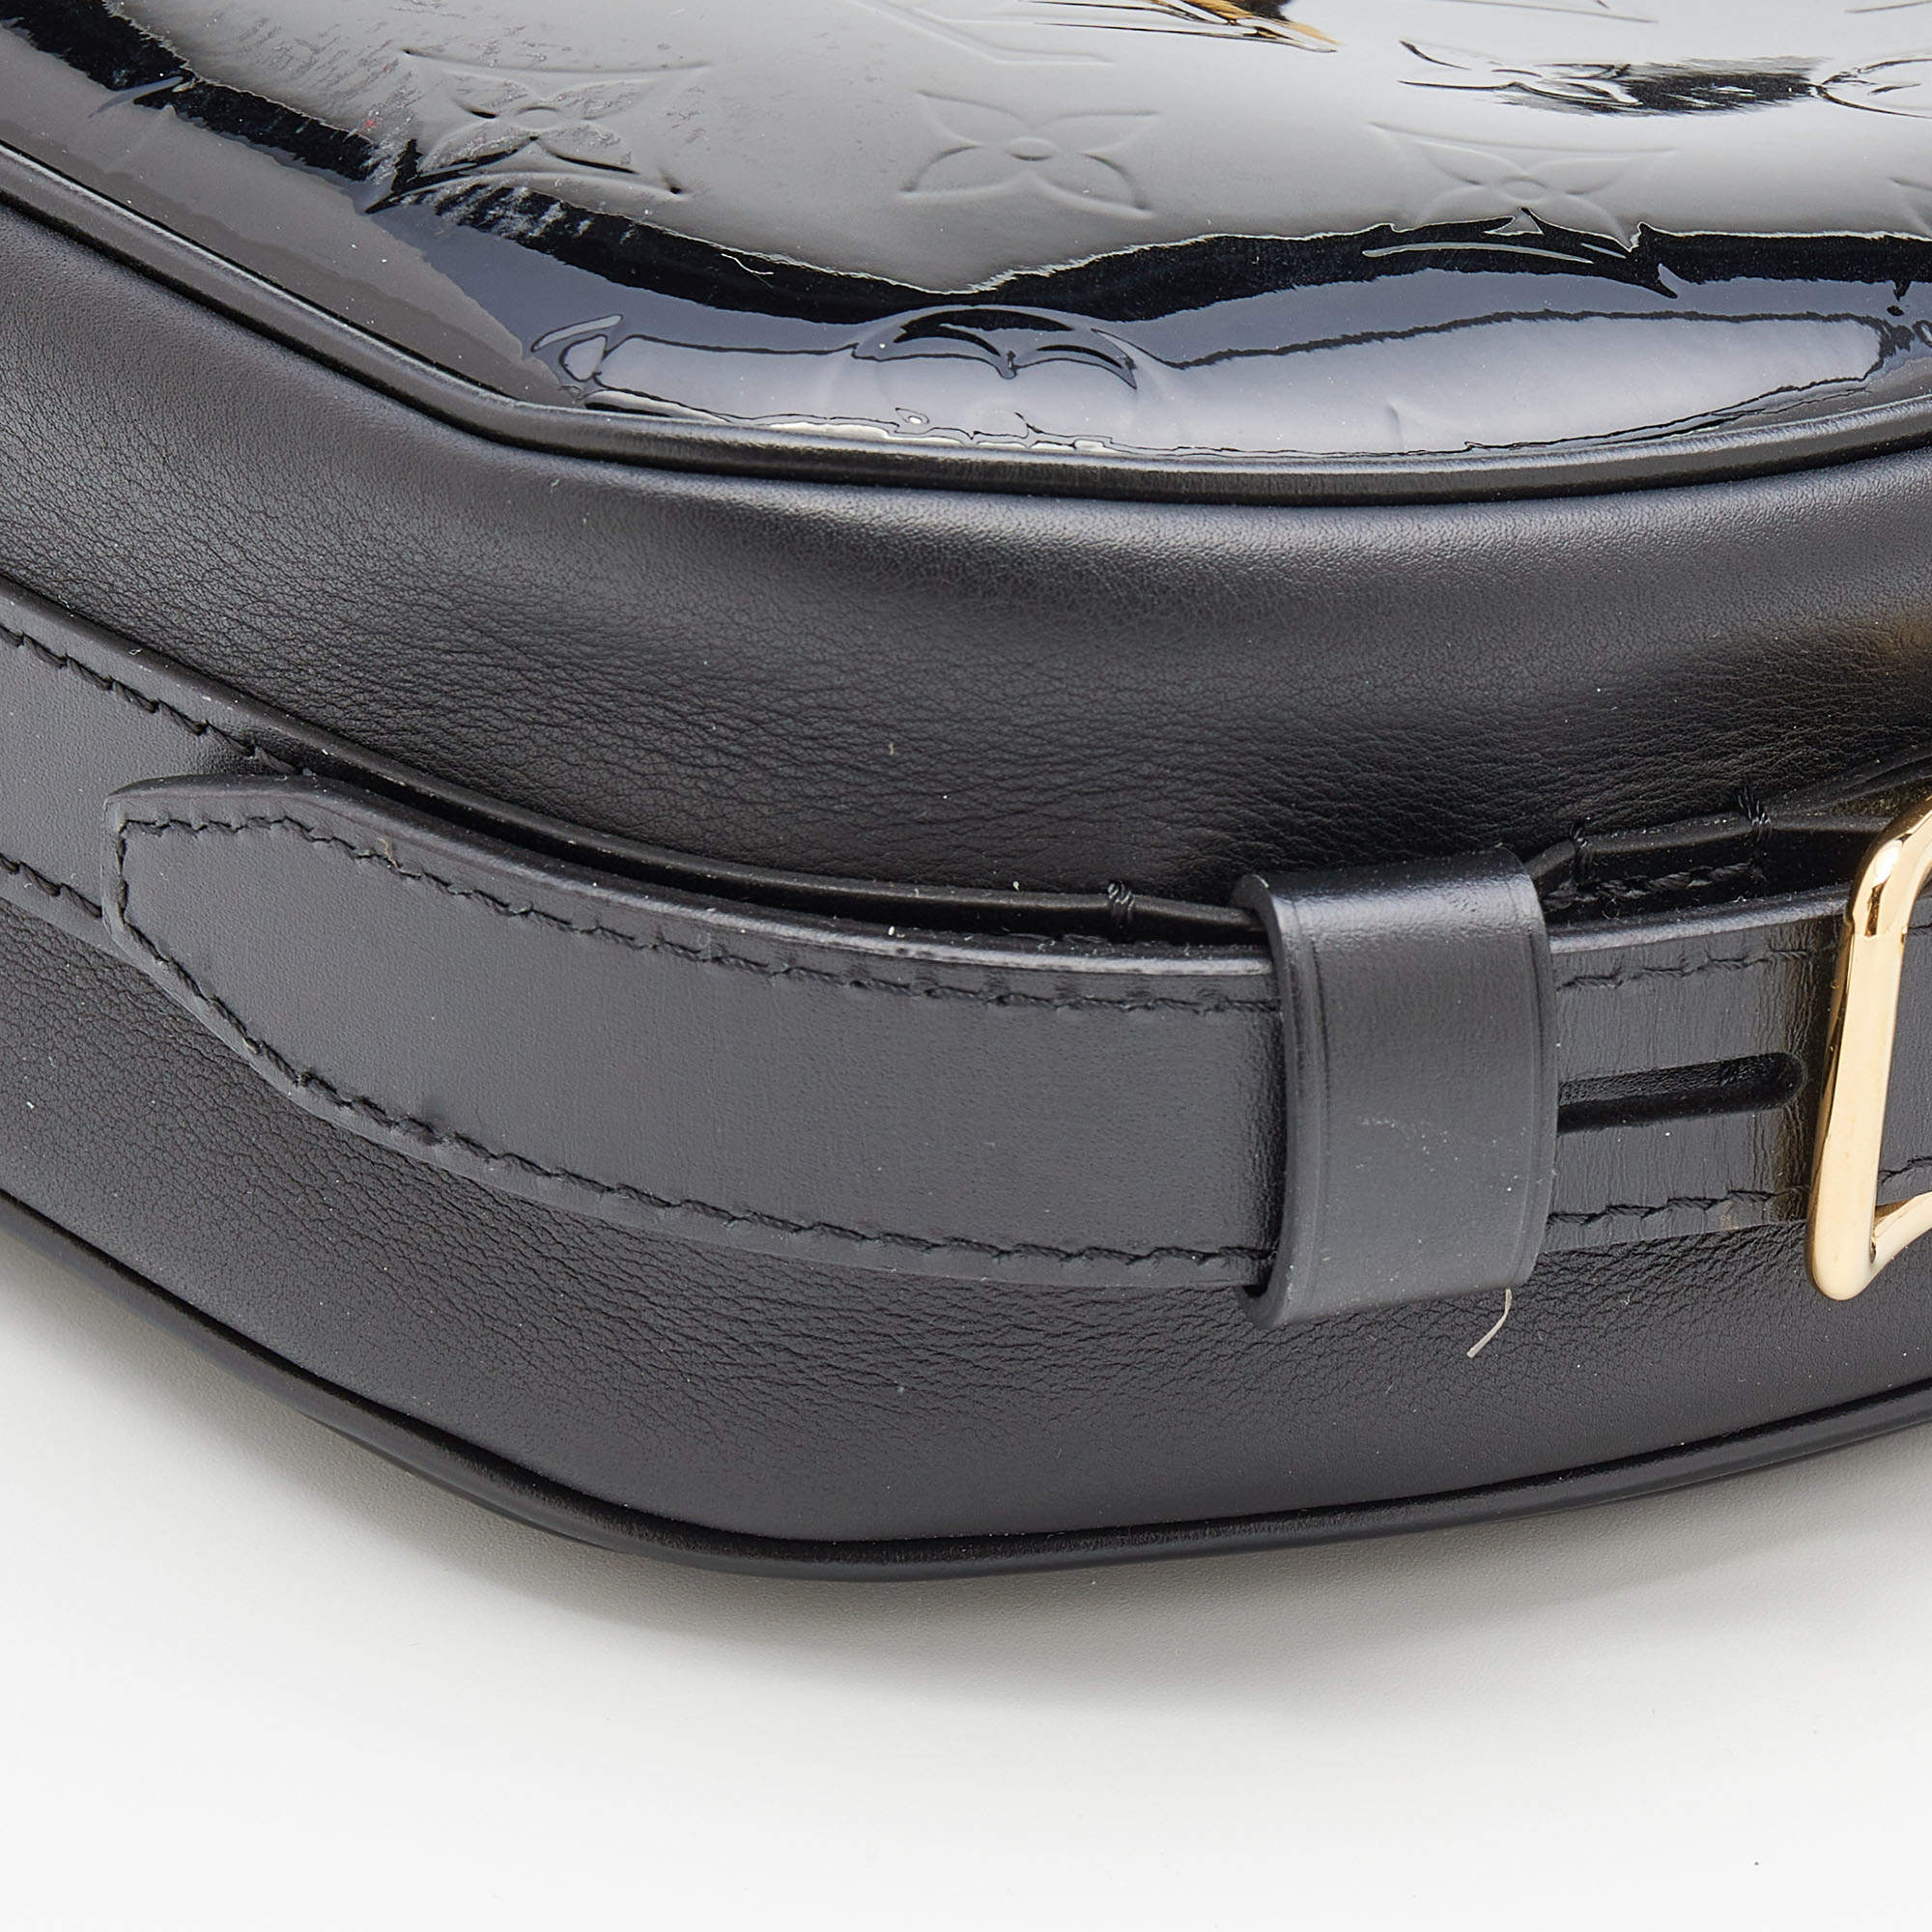 Louis Vuitton - Authenticated Boîte Chapeau Souple Handbag - Leather Multicolour for Women, Never Worn